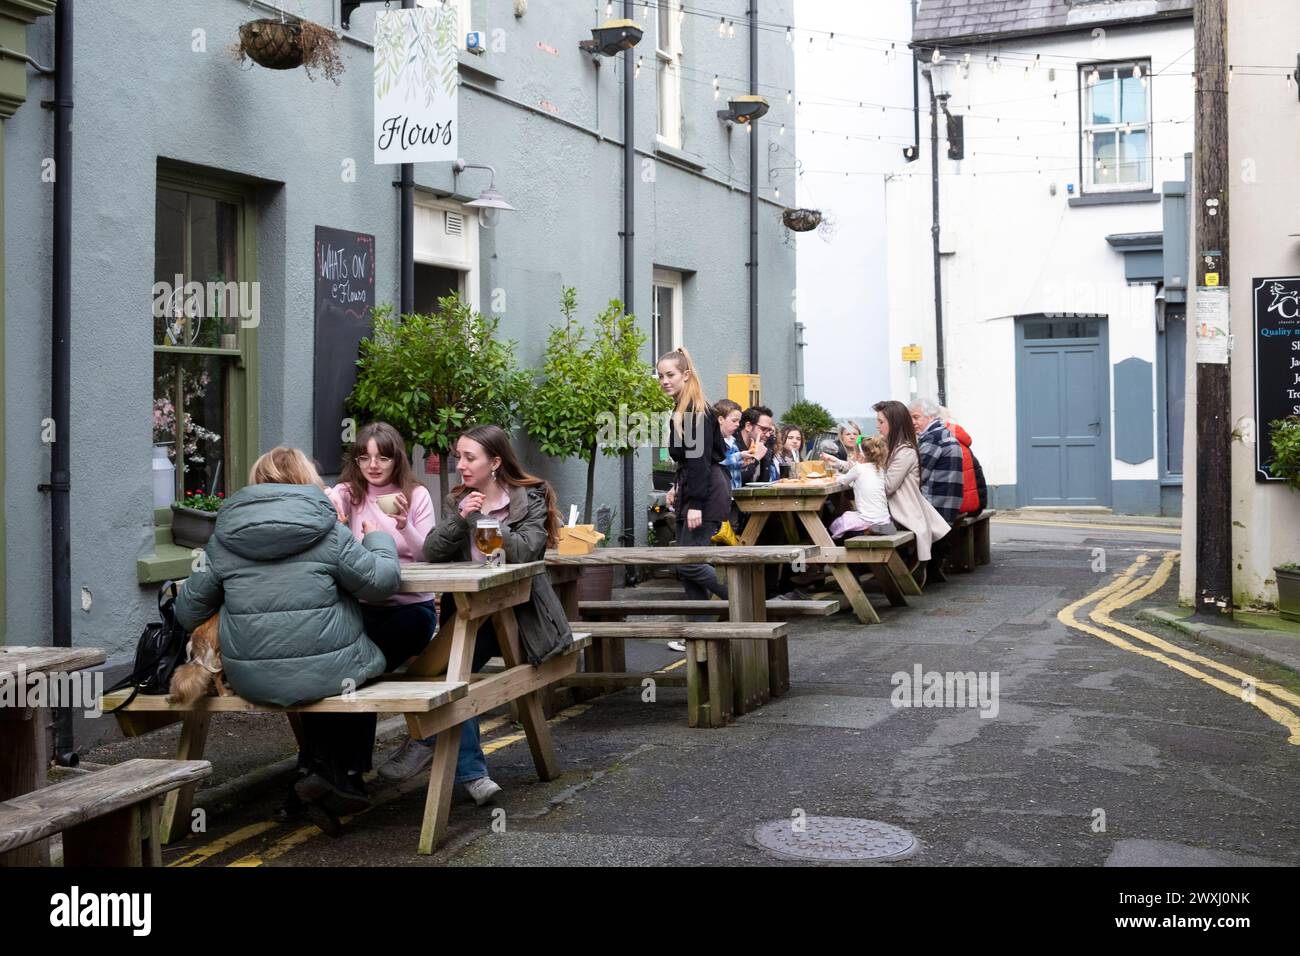 Le persone sedute ai tavoli da picnic all'aperto a pranzo mangiano e bevono al ristorante Cafe Flows on Market Street a Llandeilo, Carmarthenshire, Galles Foto Stock